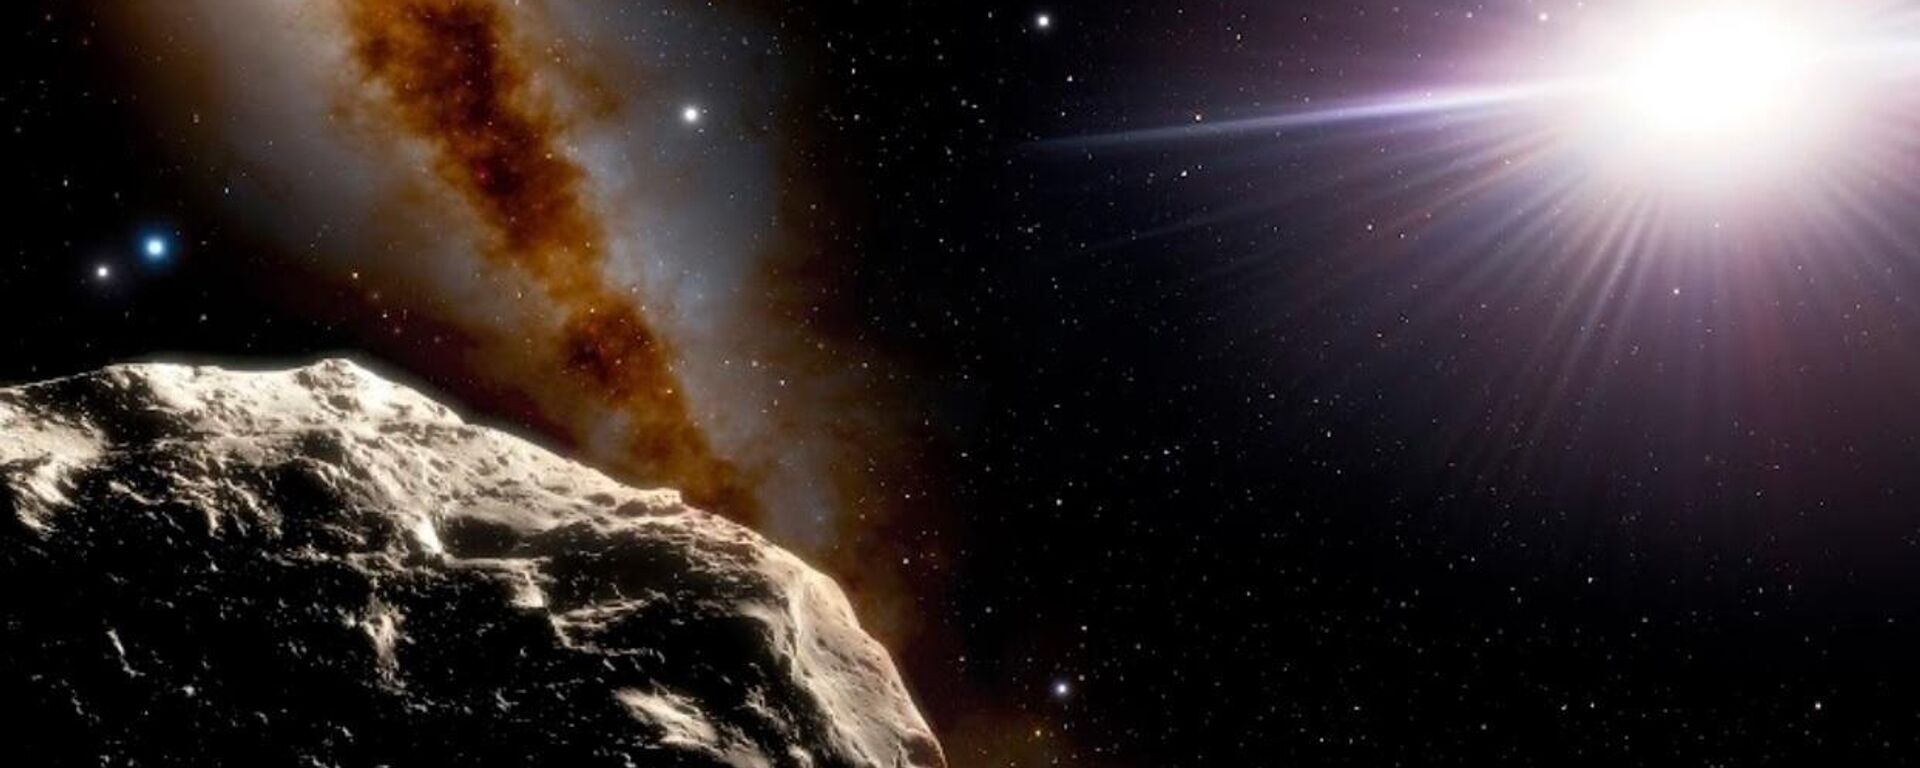 Los asteroides troyanos terrestres son cuerpos pequeños que orbitan alrededor del sistema solar - Sputnik Mundo, 1920, 02.02.2022